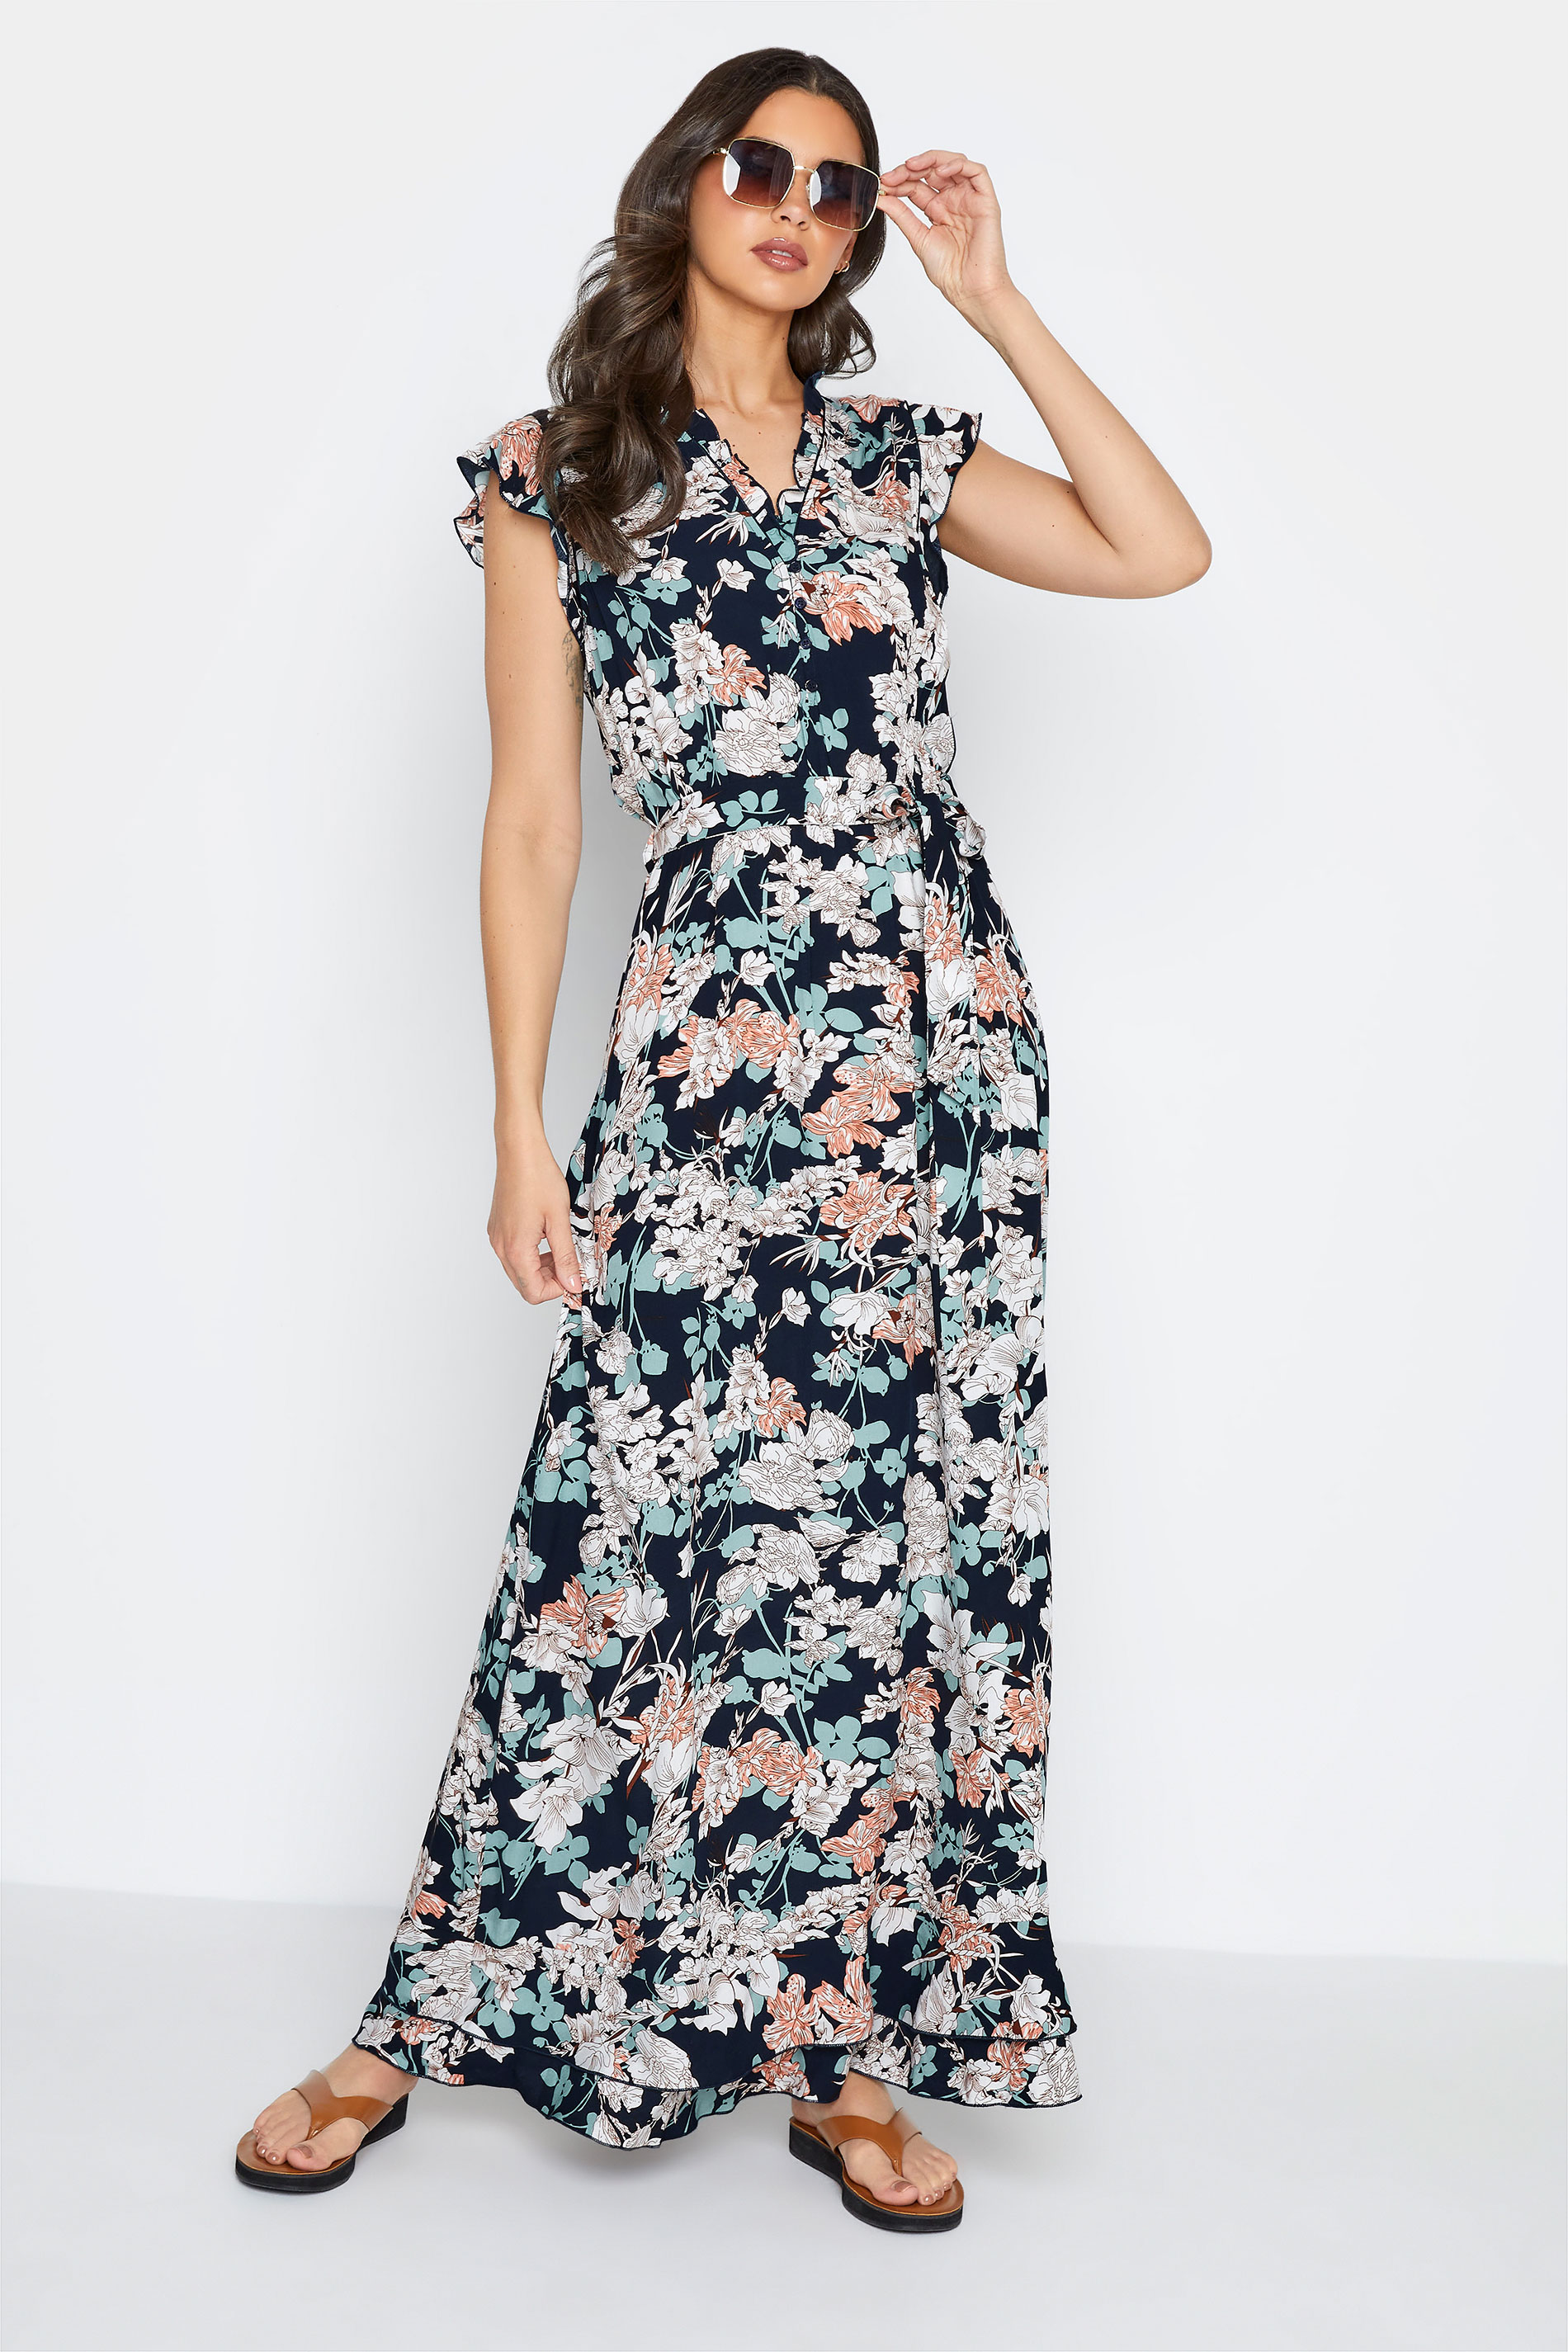 LTS Tall Women's Navy Blue Floral Frill Maxi Dress | Long Tall Sally 2